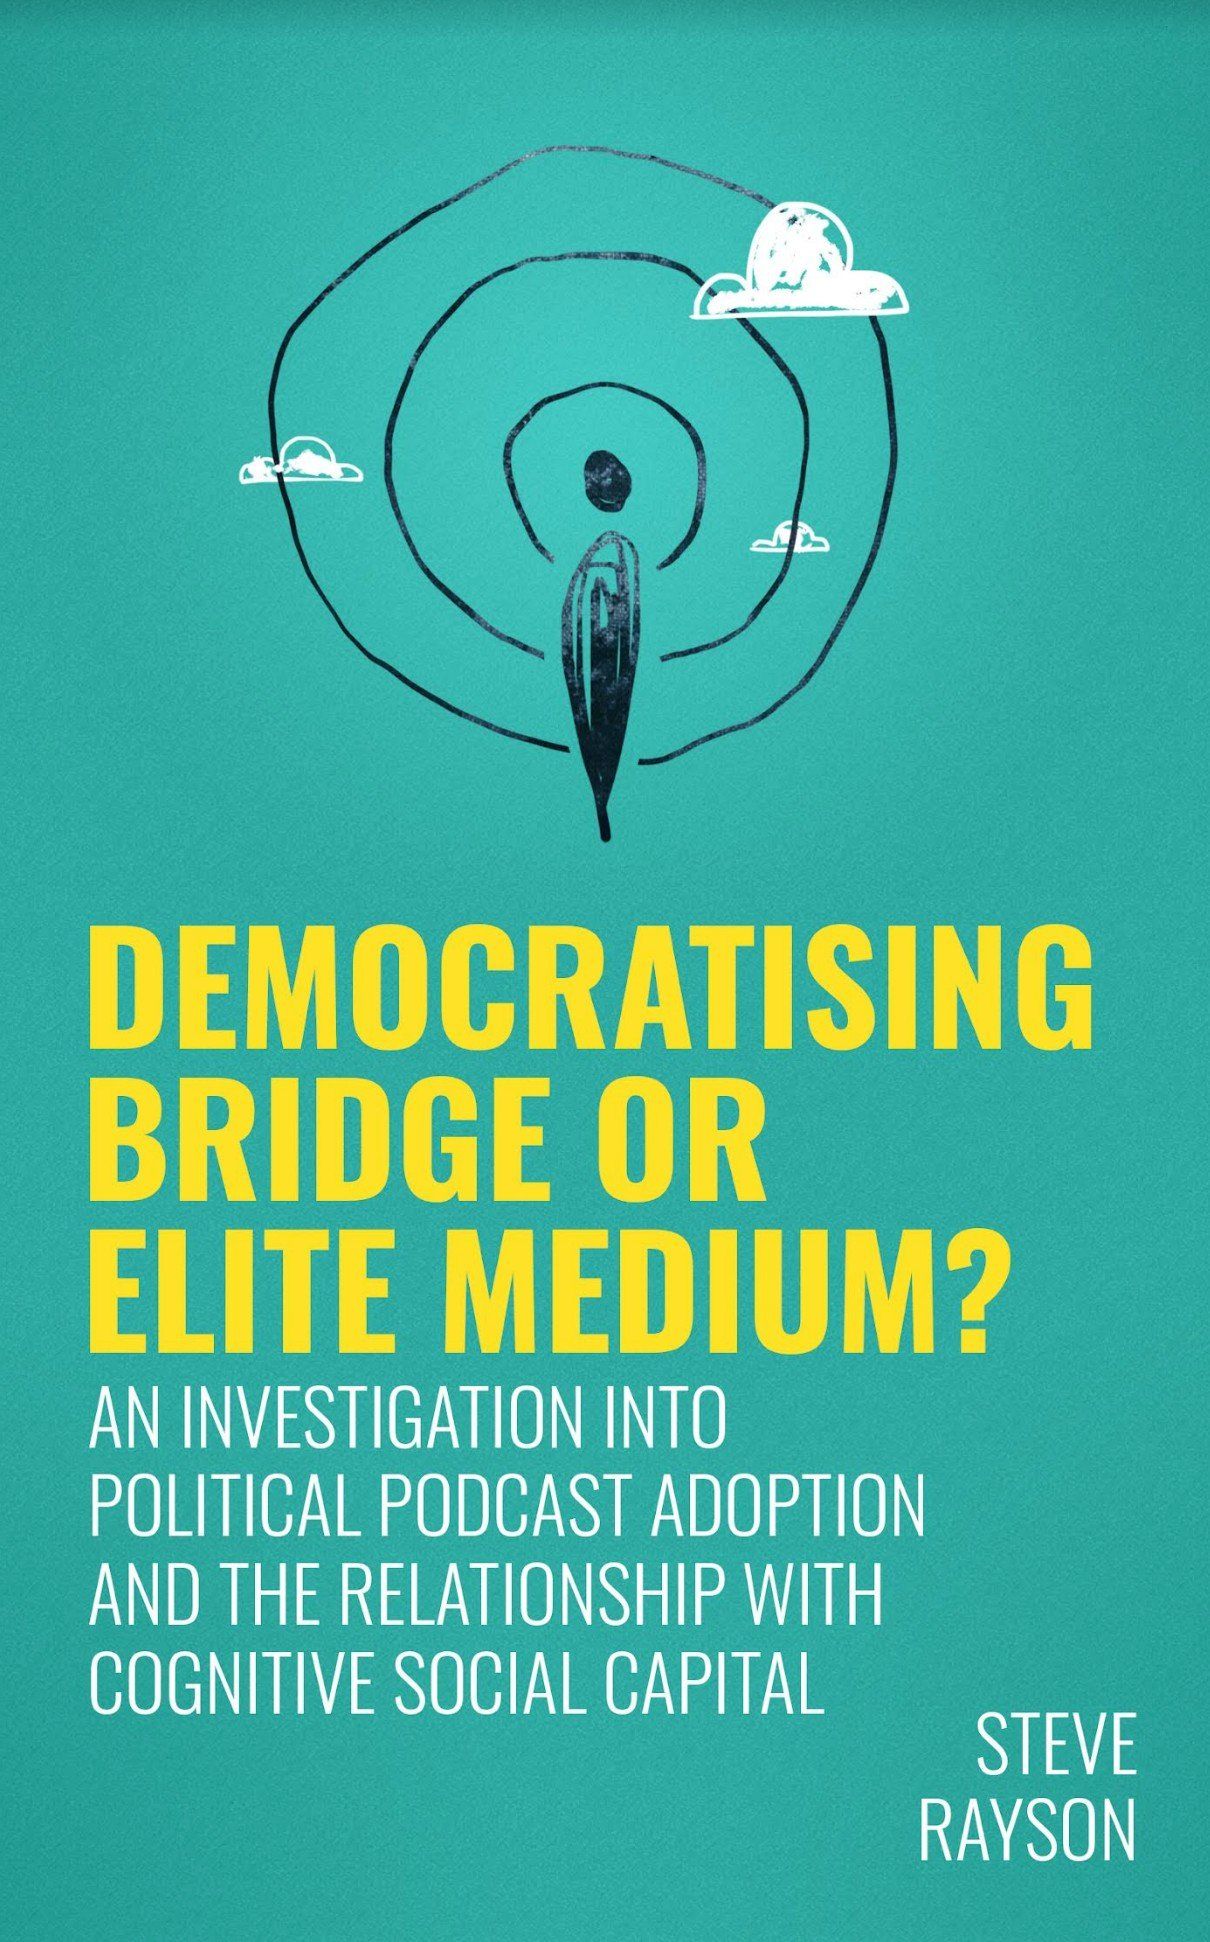 book cover - democratising bridge or elite medium